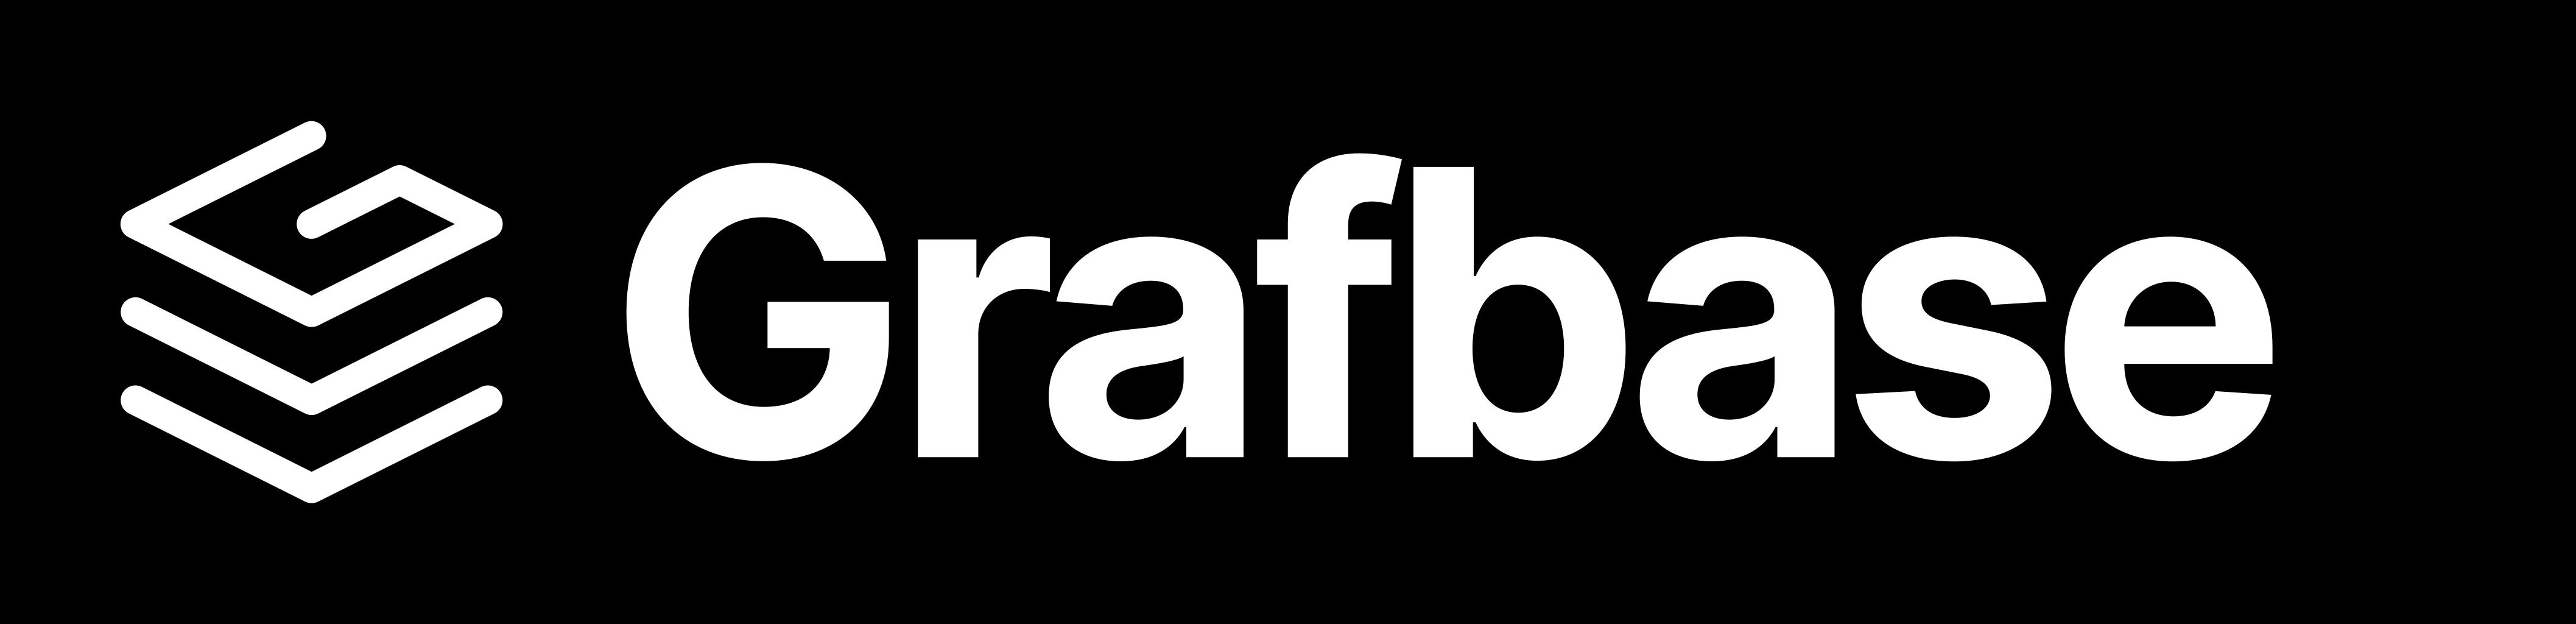 grafbase logo